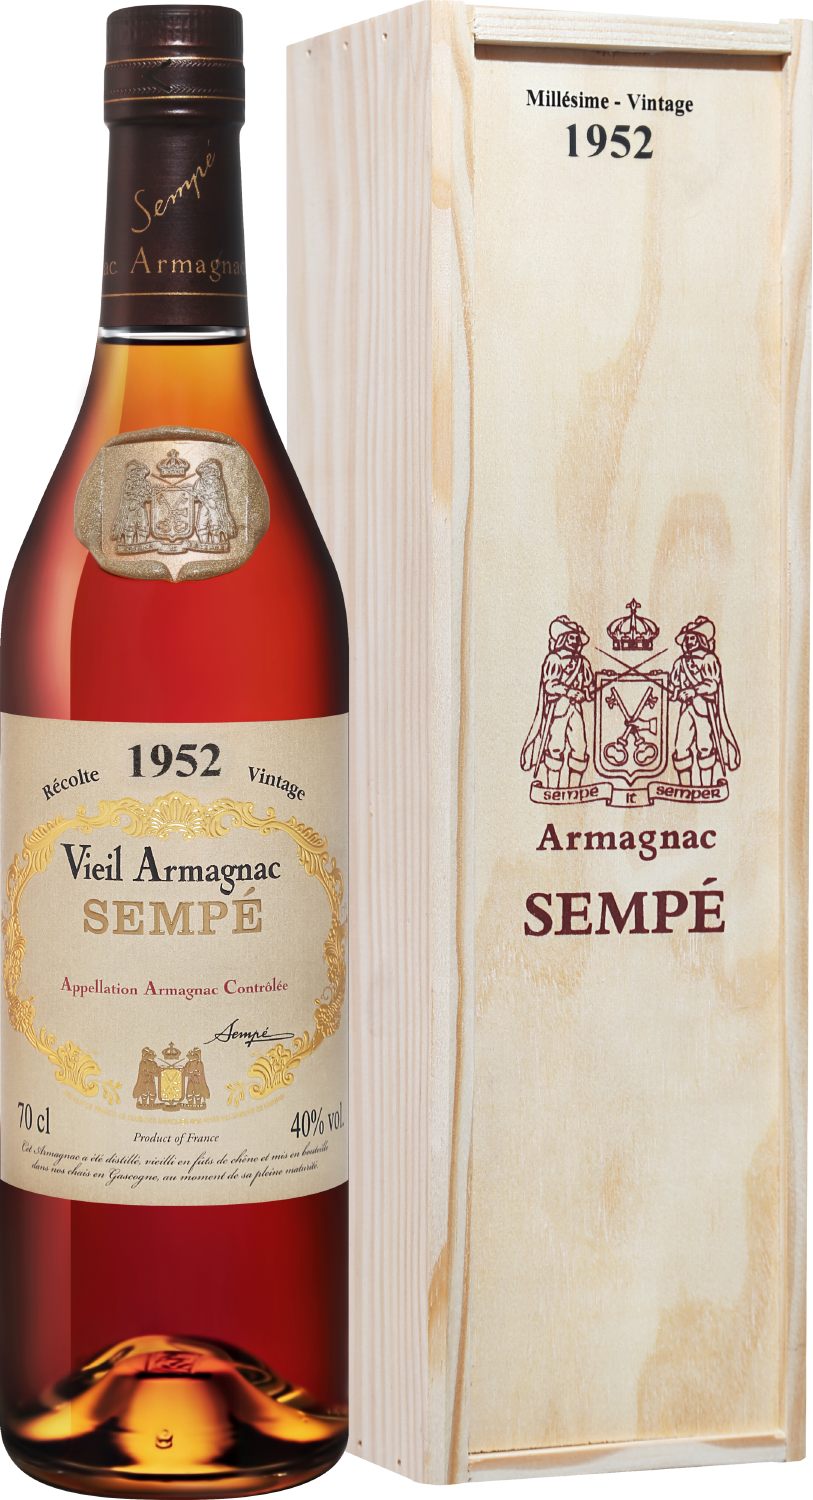 Sempe Vieil Armagnac 1952 (gift box)